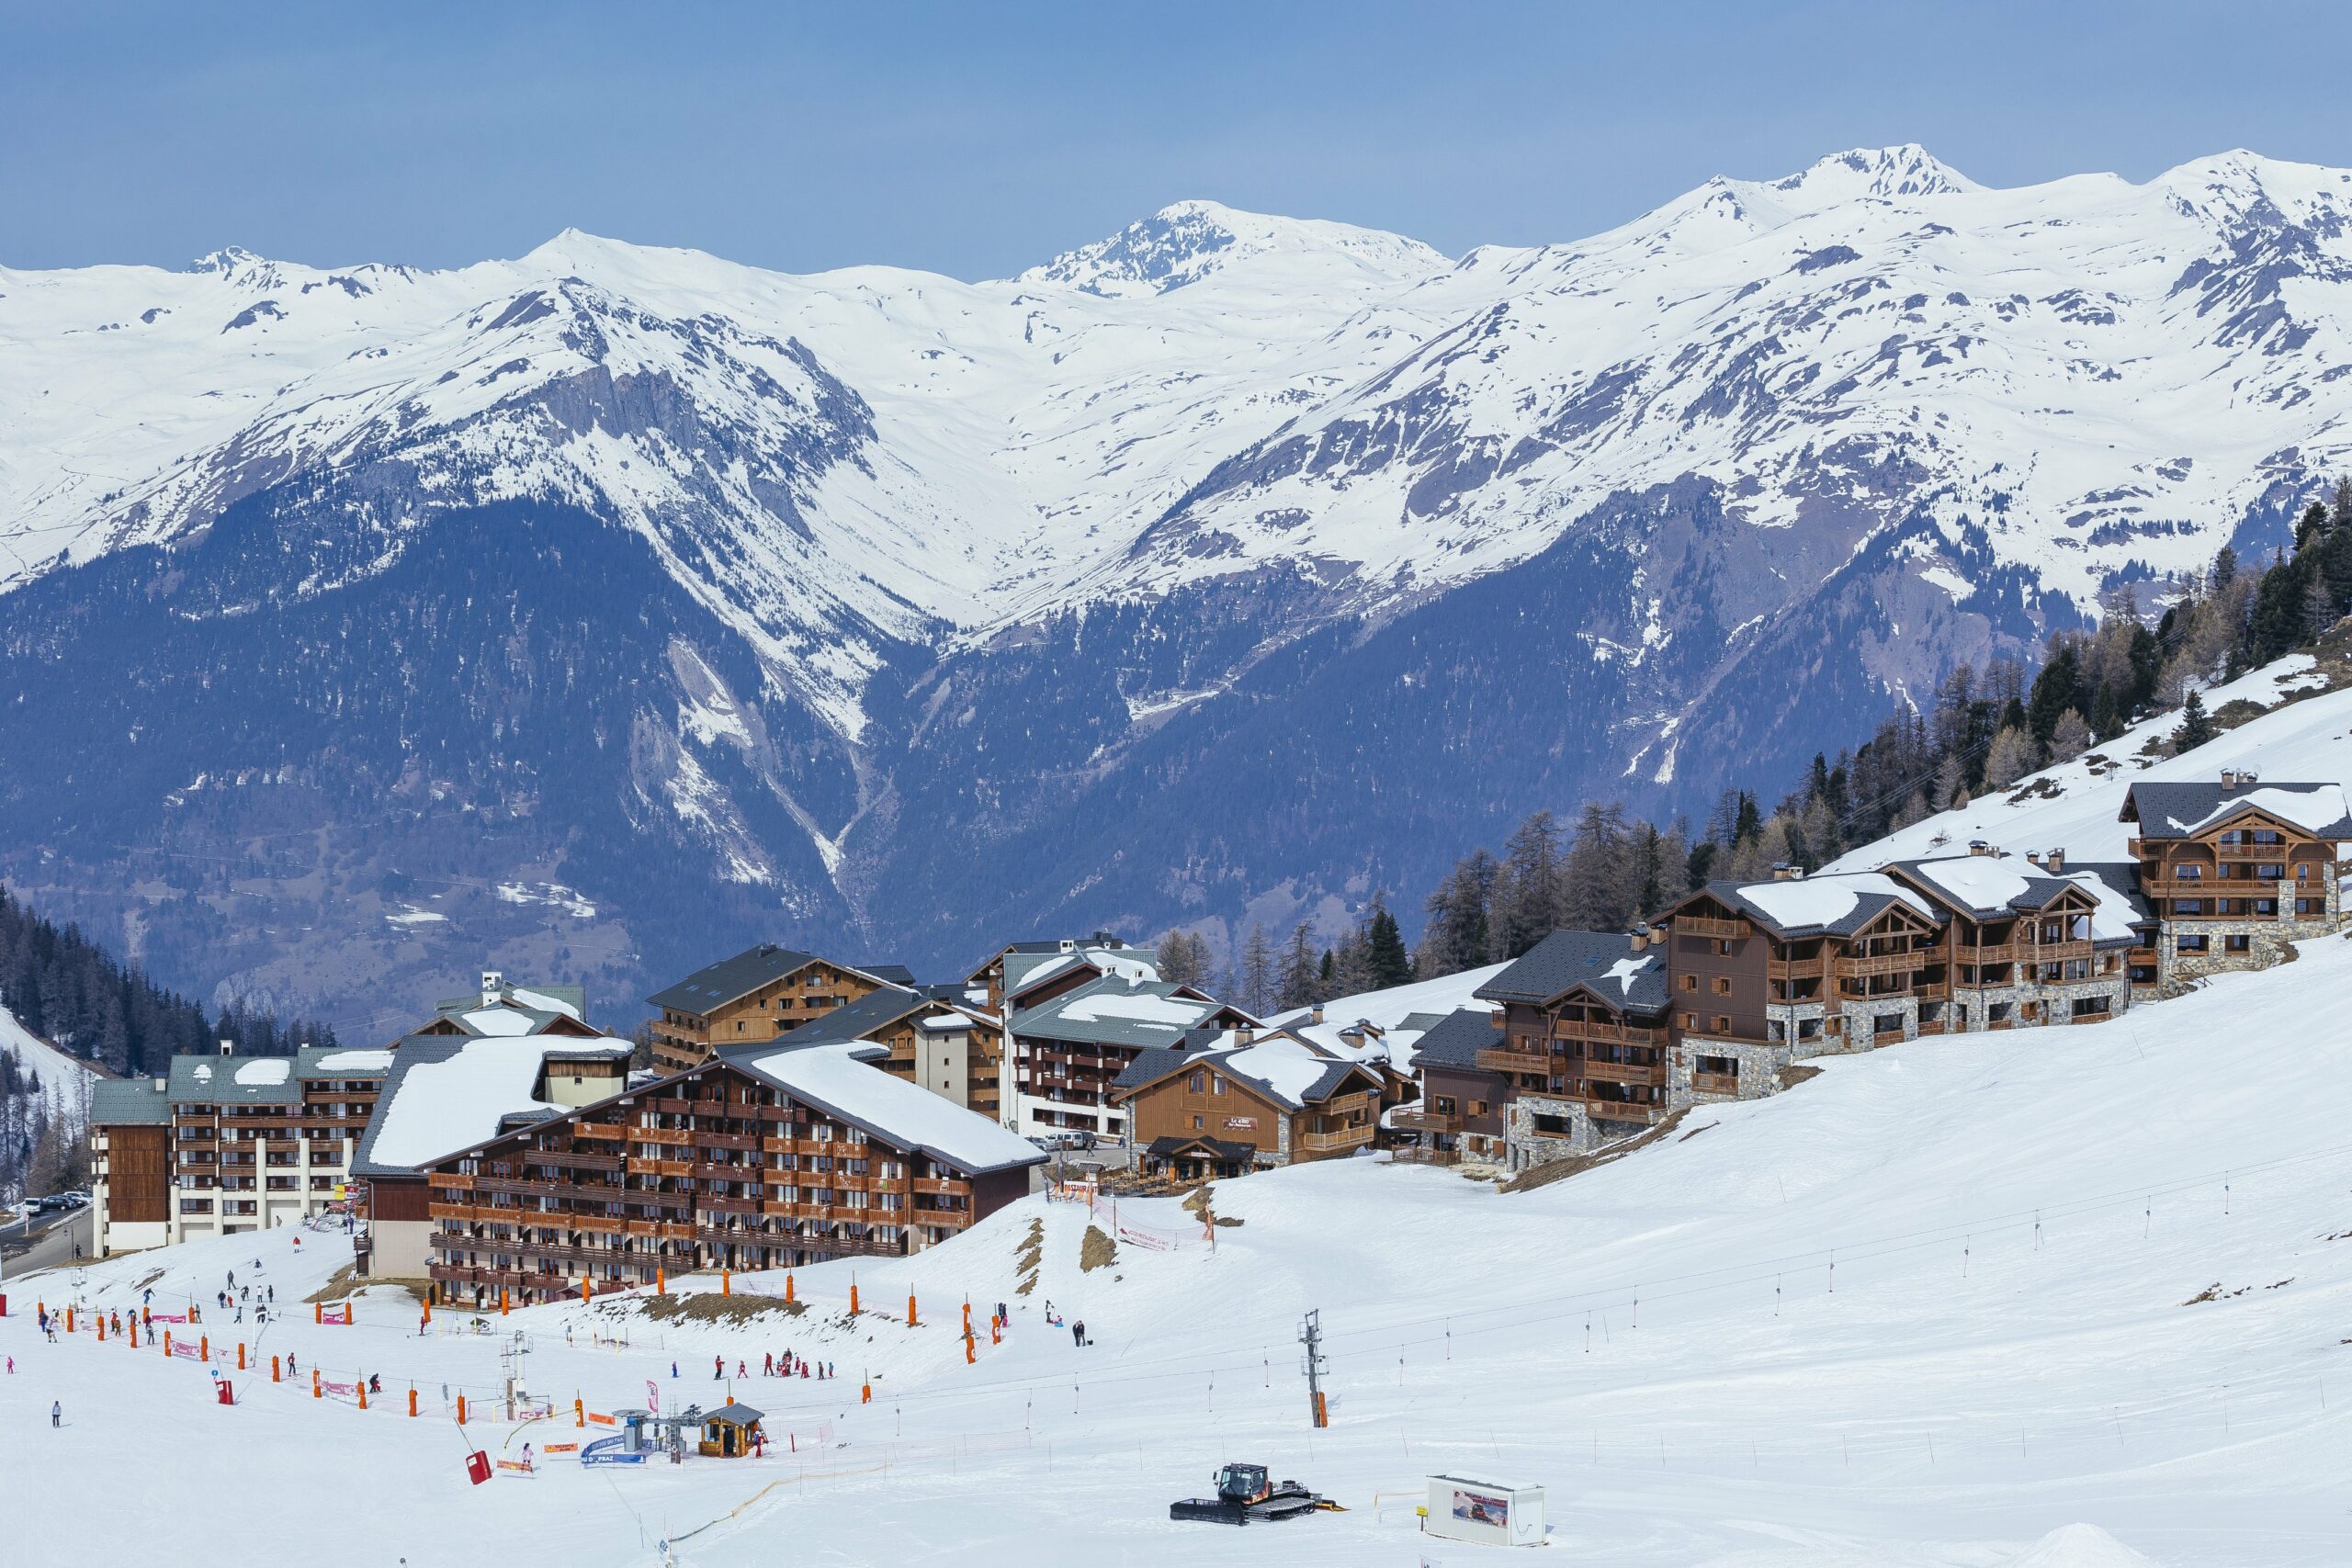 La Plagne; high and ski convenient.